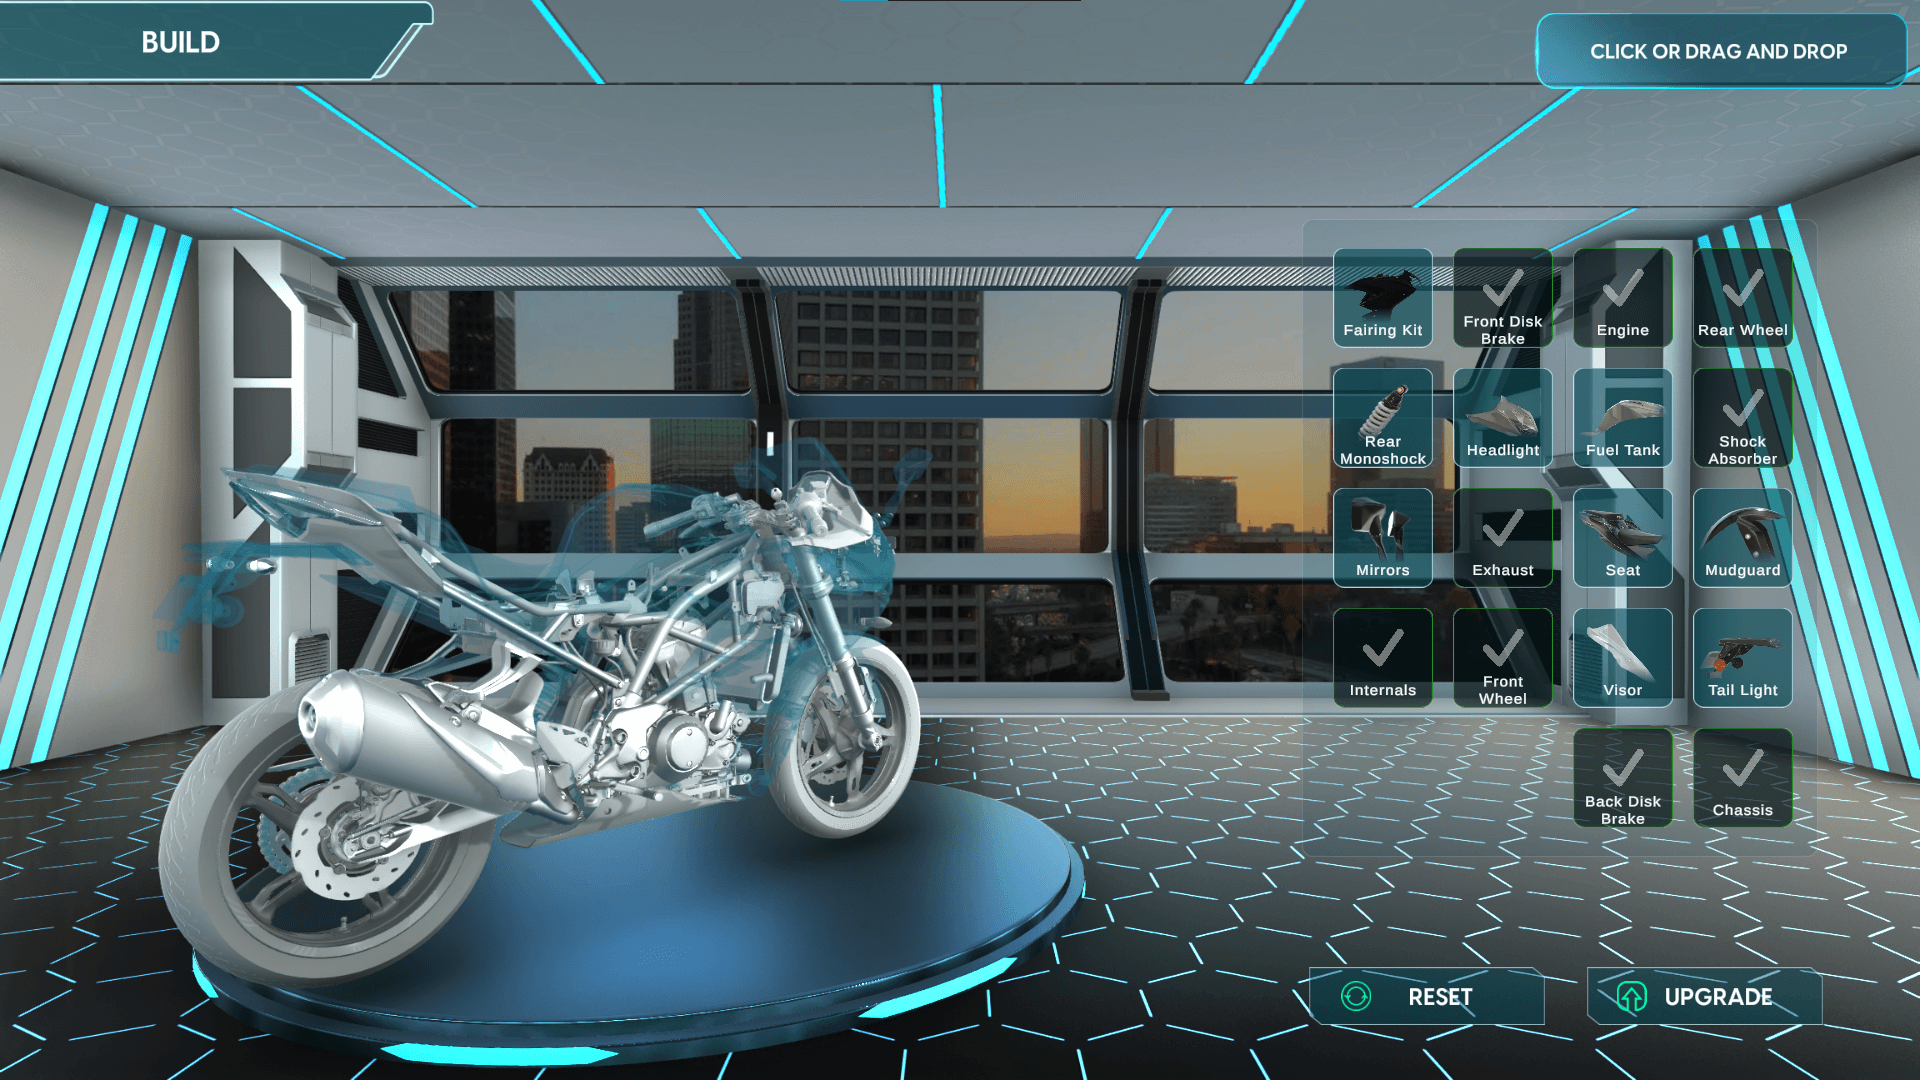 Kidzania - Bike design studio interactive 3D simulation